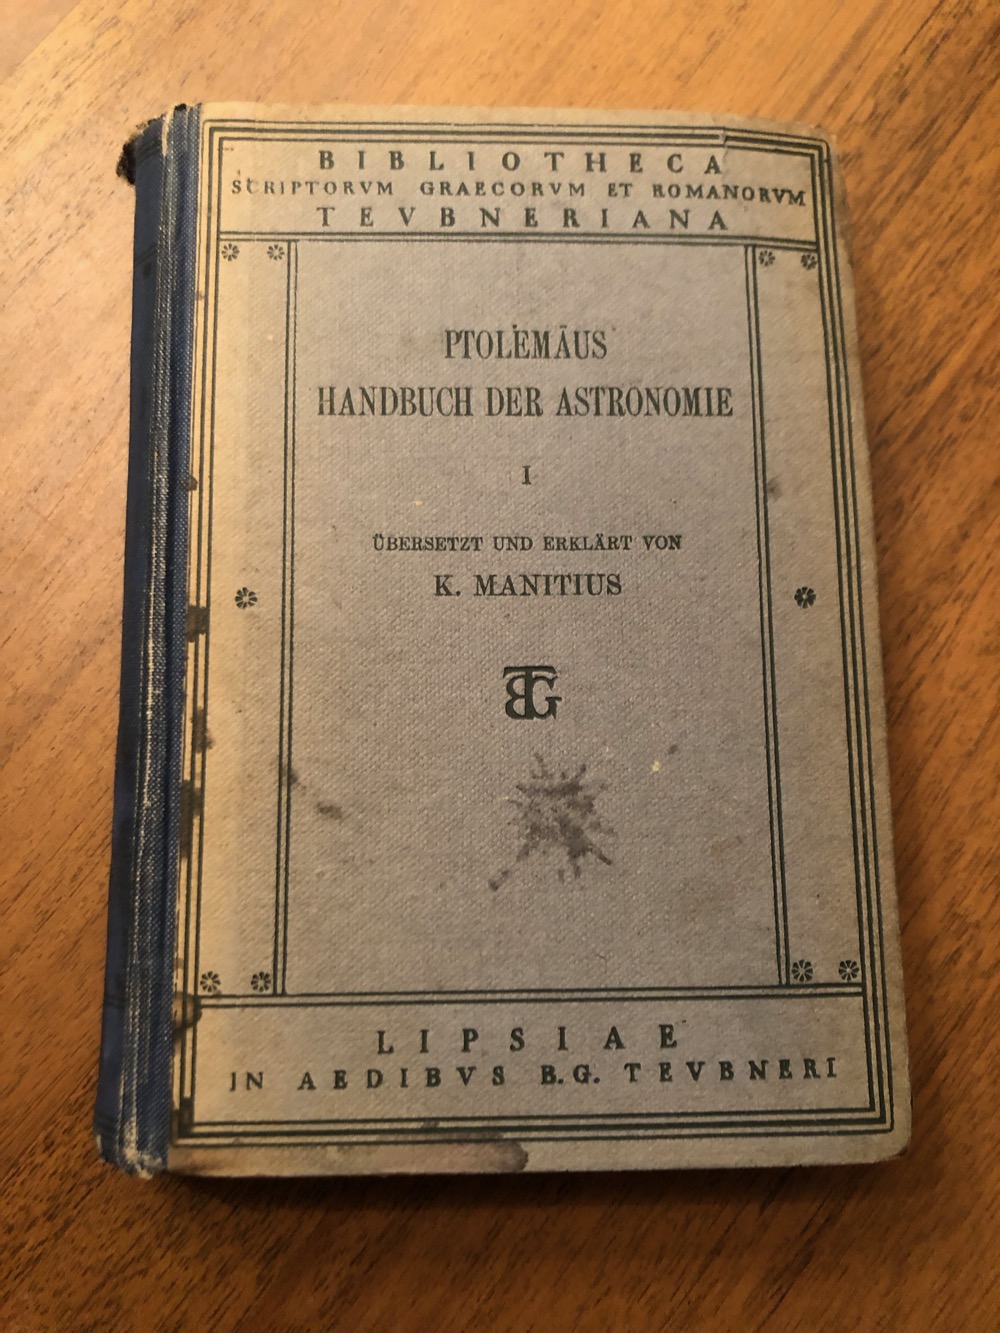 Je bekijkt nu Ptolemäus Handbuch der Astronomie – 1912